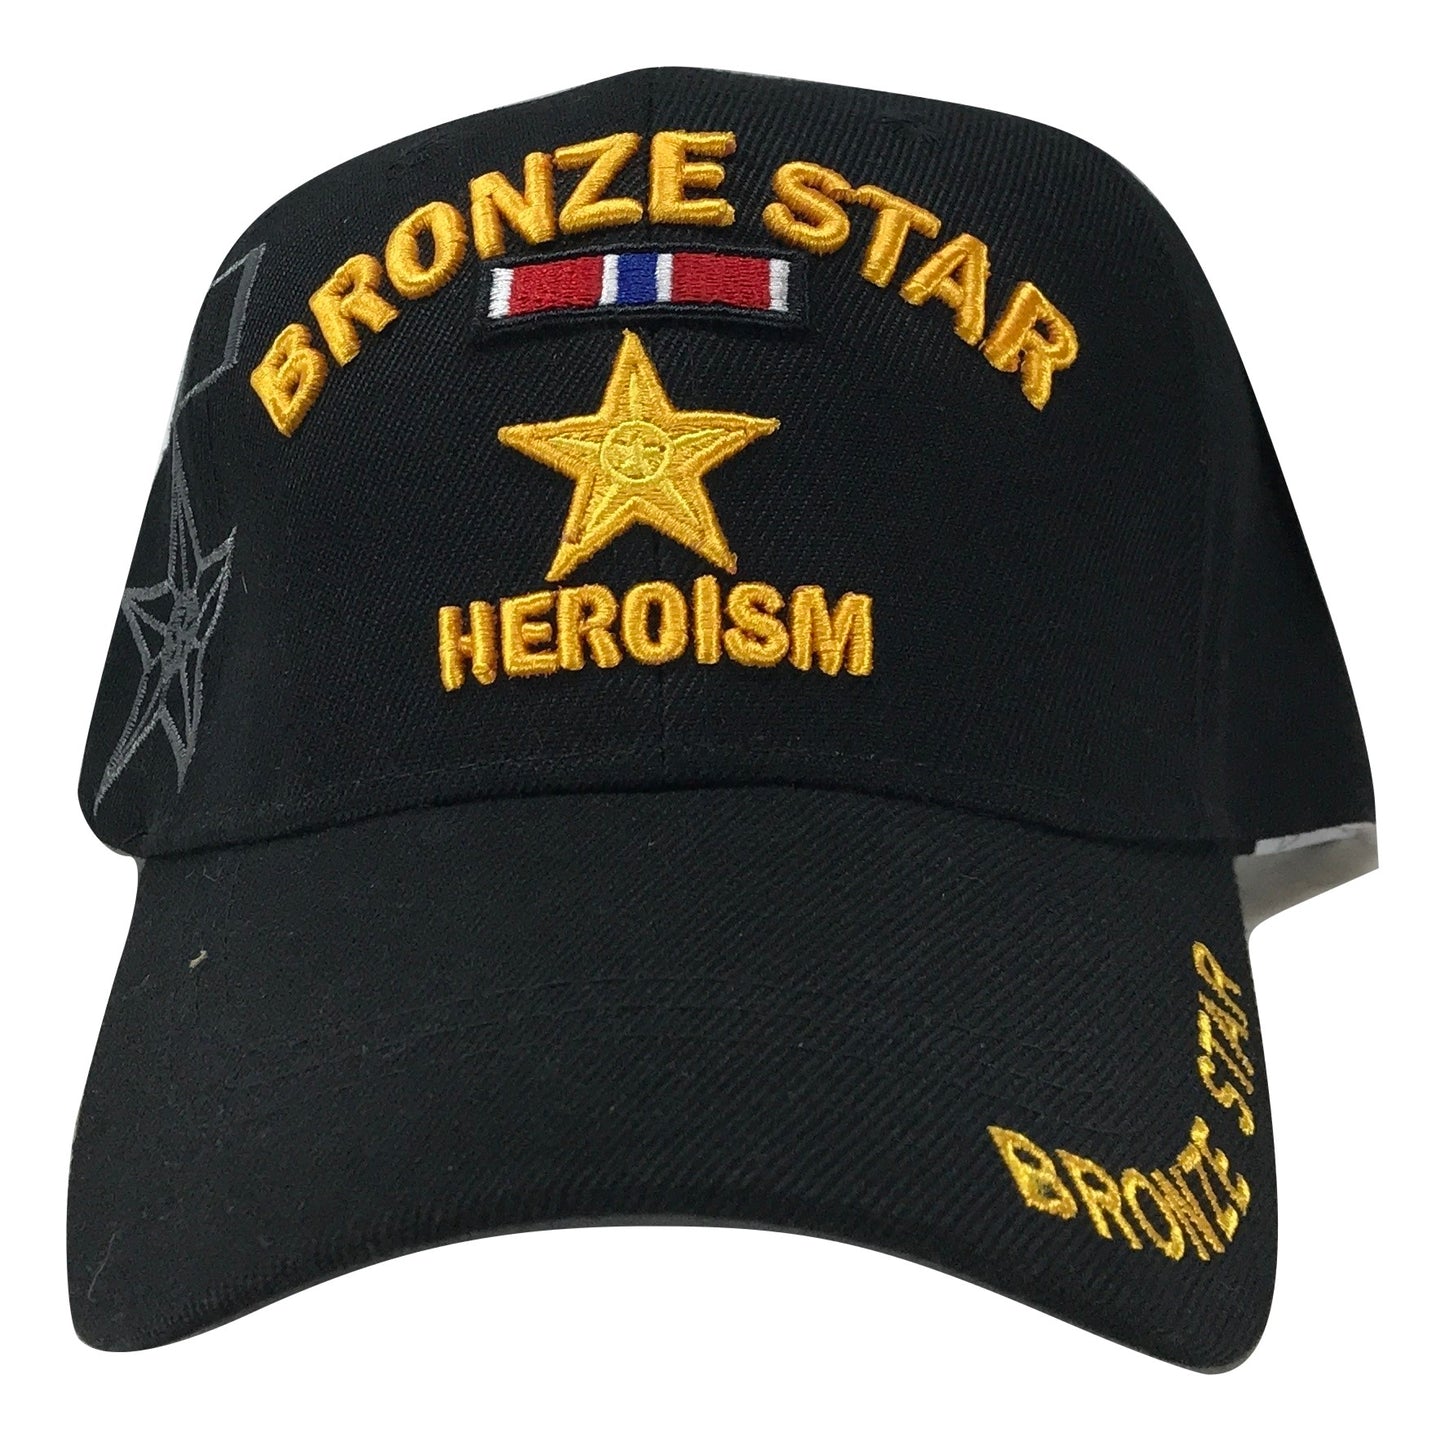 Bronze Star - Heroism